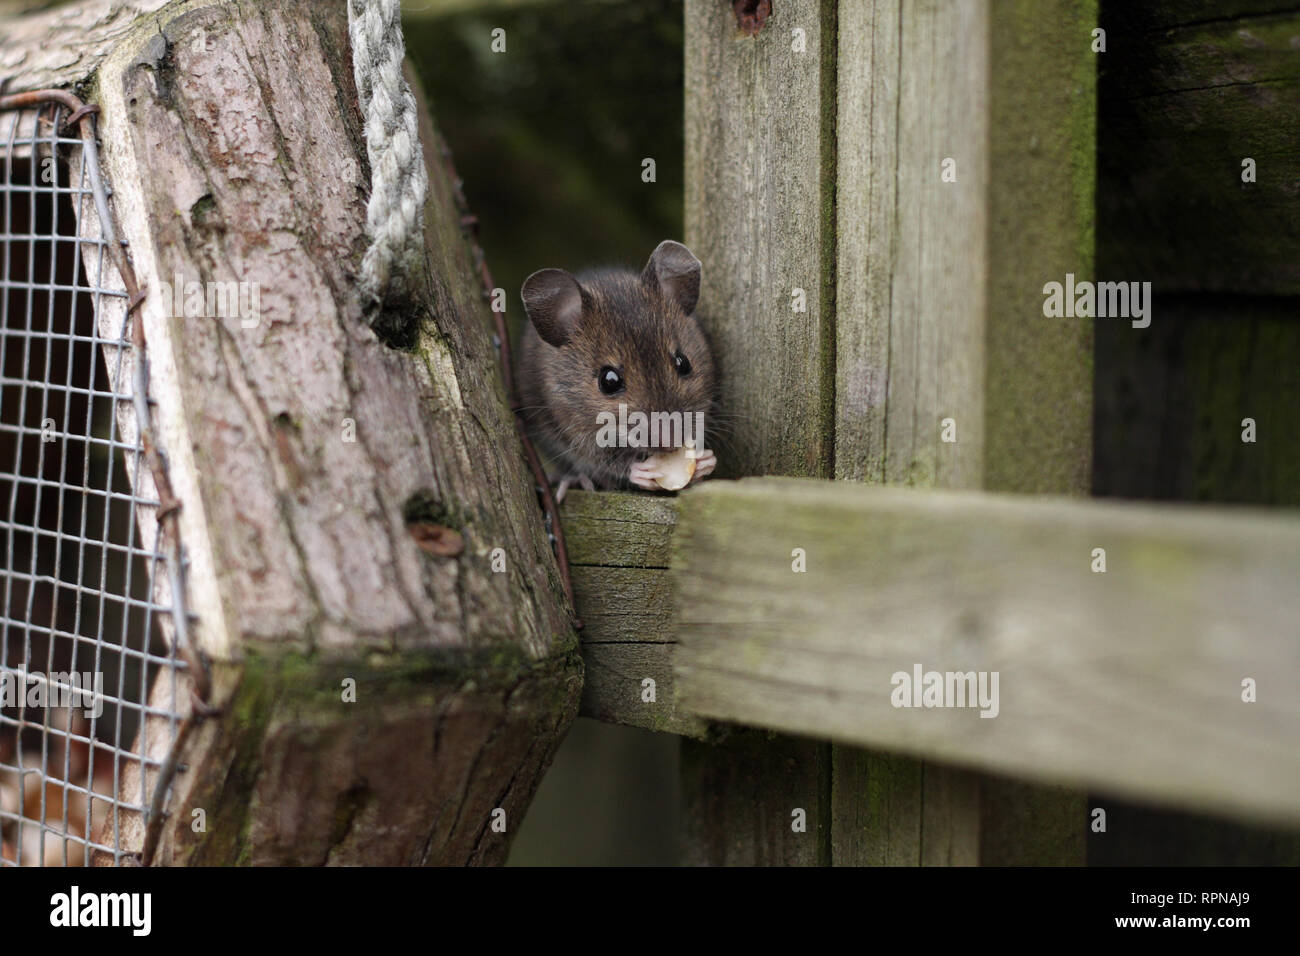 Este ratón de madera estaba ayudando a tuercas del pájaro. Fotografía tomada en el jardín de atrás en Worcestershire, Reino Unido en marzo Foto de stock